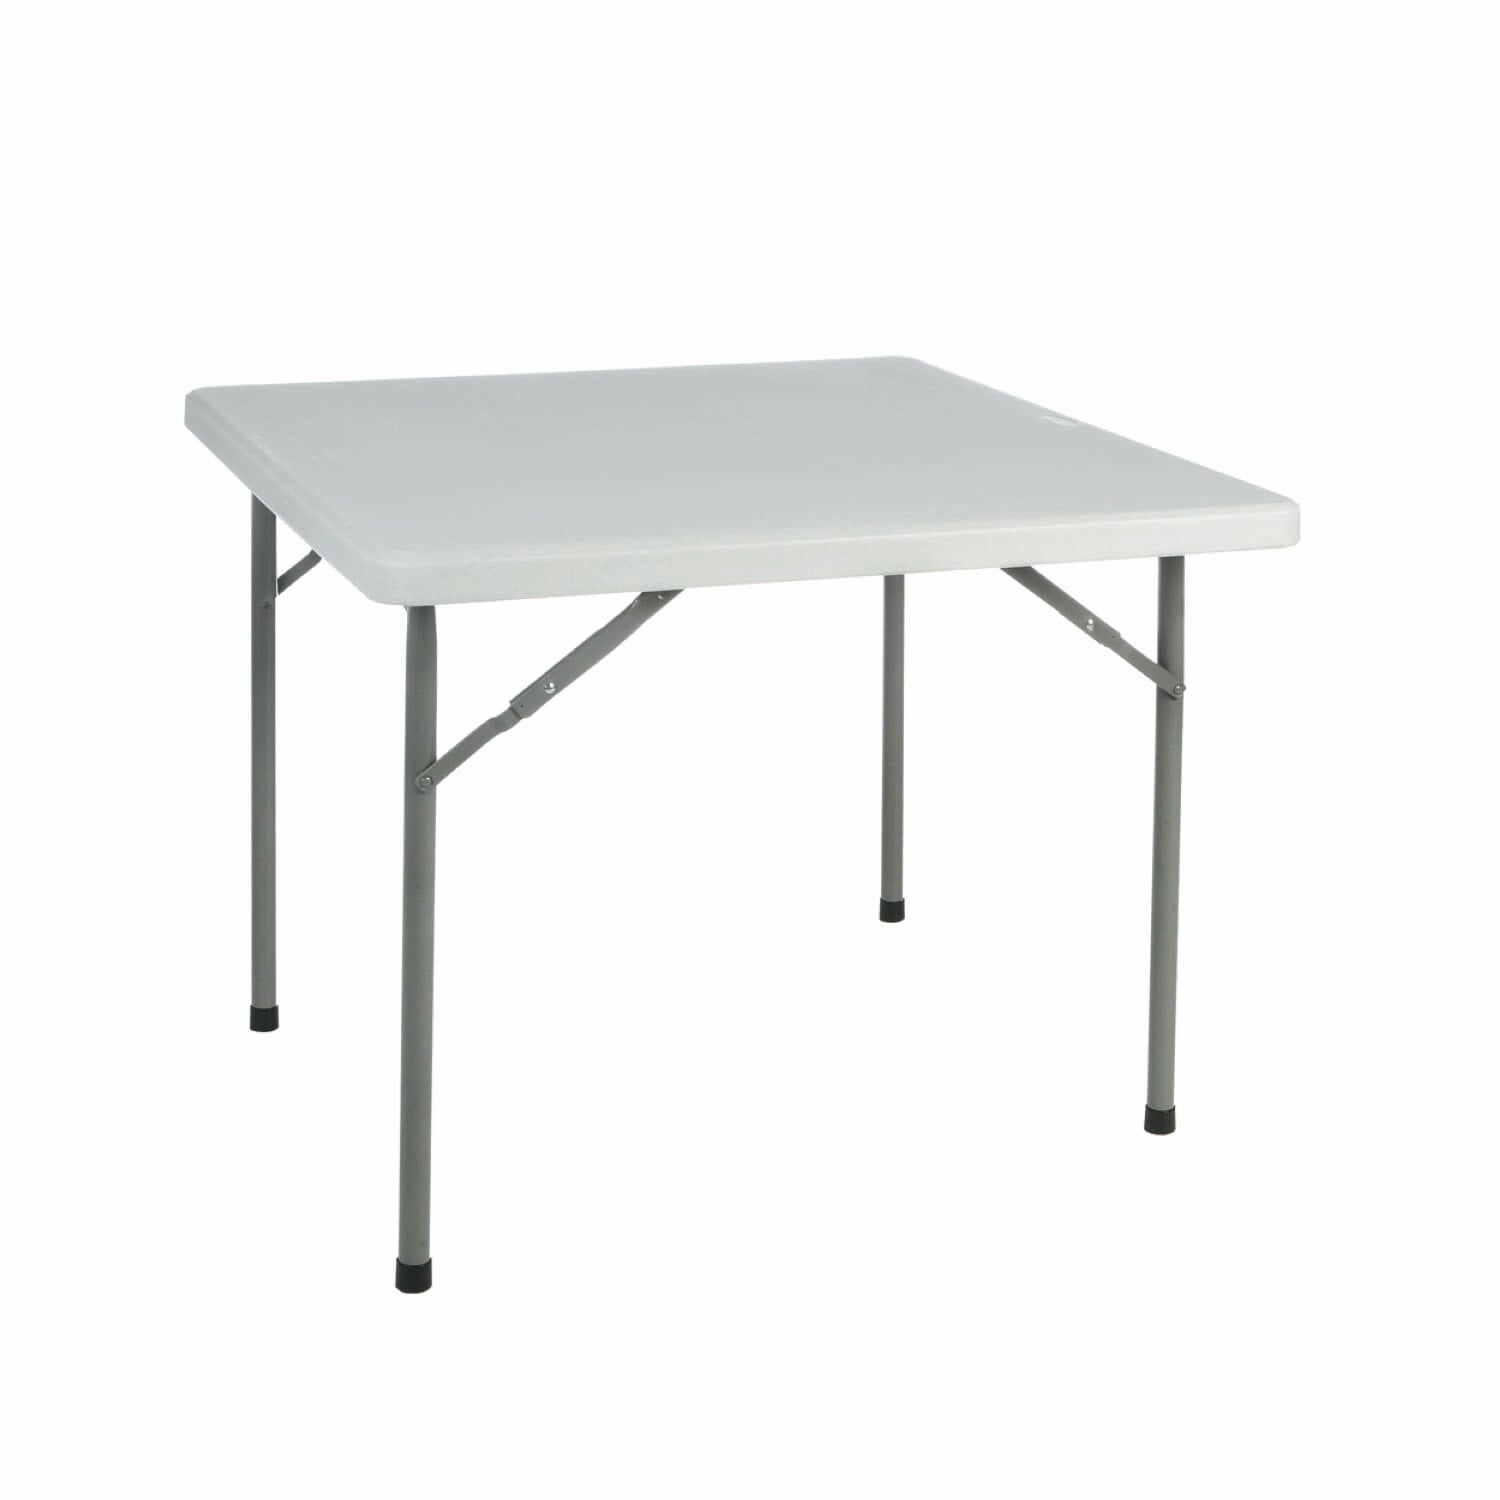 Garbar yago square folding table 88x88 gray